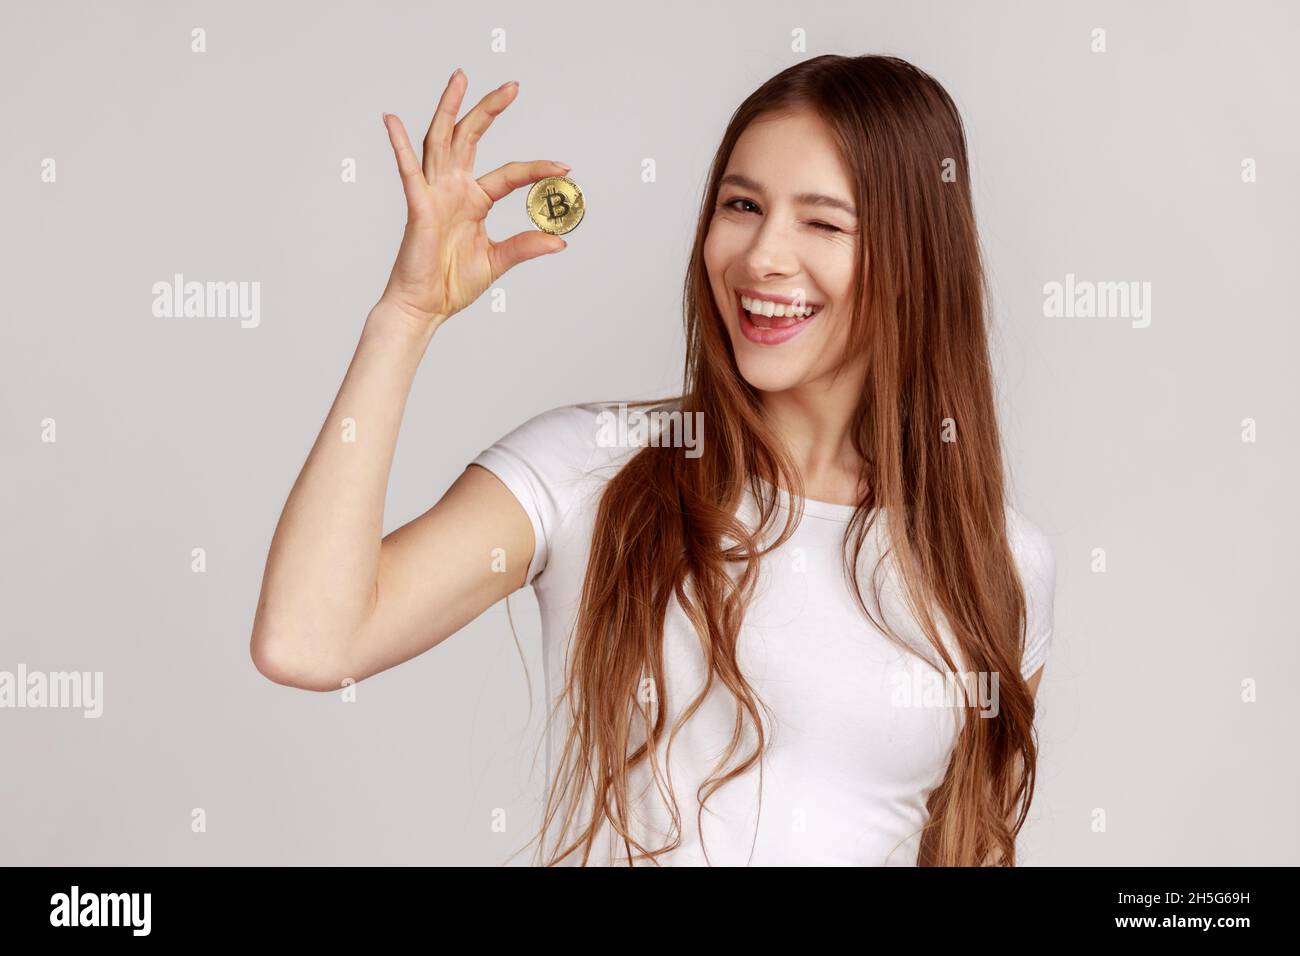 Ritratto di bella donna che tiene il bitcoin d'oro, mostrando la moneta btc e il winking alla macchina fotografica con espressione positiva, indossando la T-shirt bianca. Studio interno girato isolato su sfondo grigio. Foto Stock